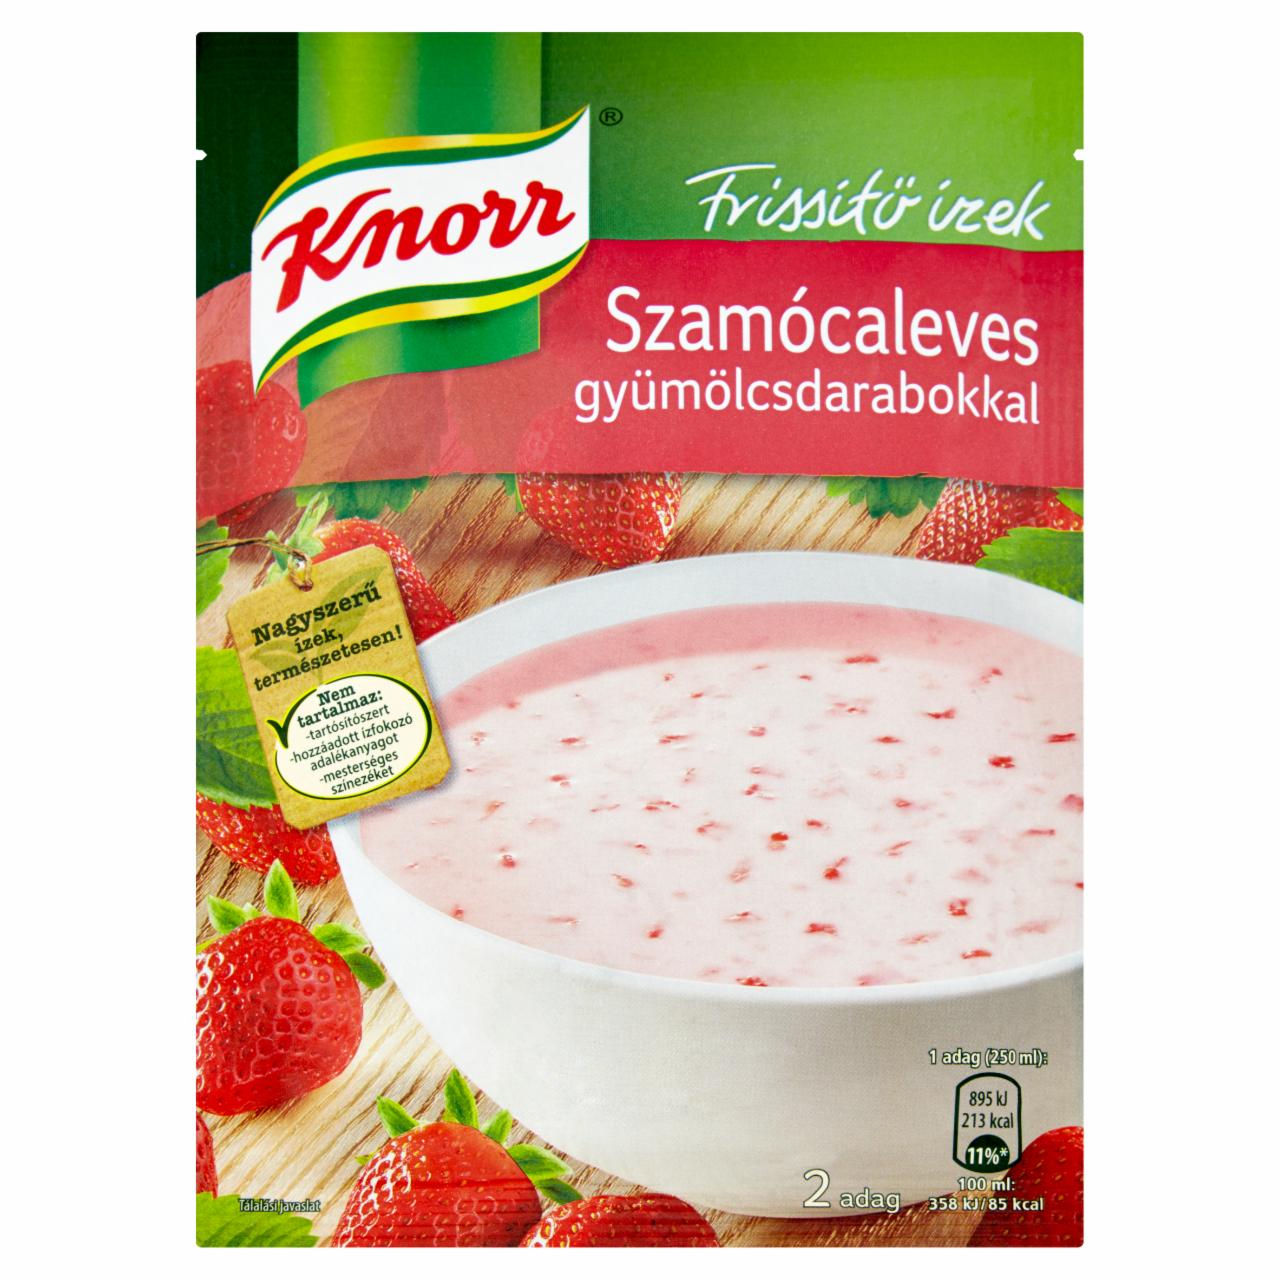 Képek - Knorr Frissítő ízek szamócaleves gyümölcsdarabokkal 45 g